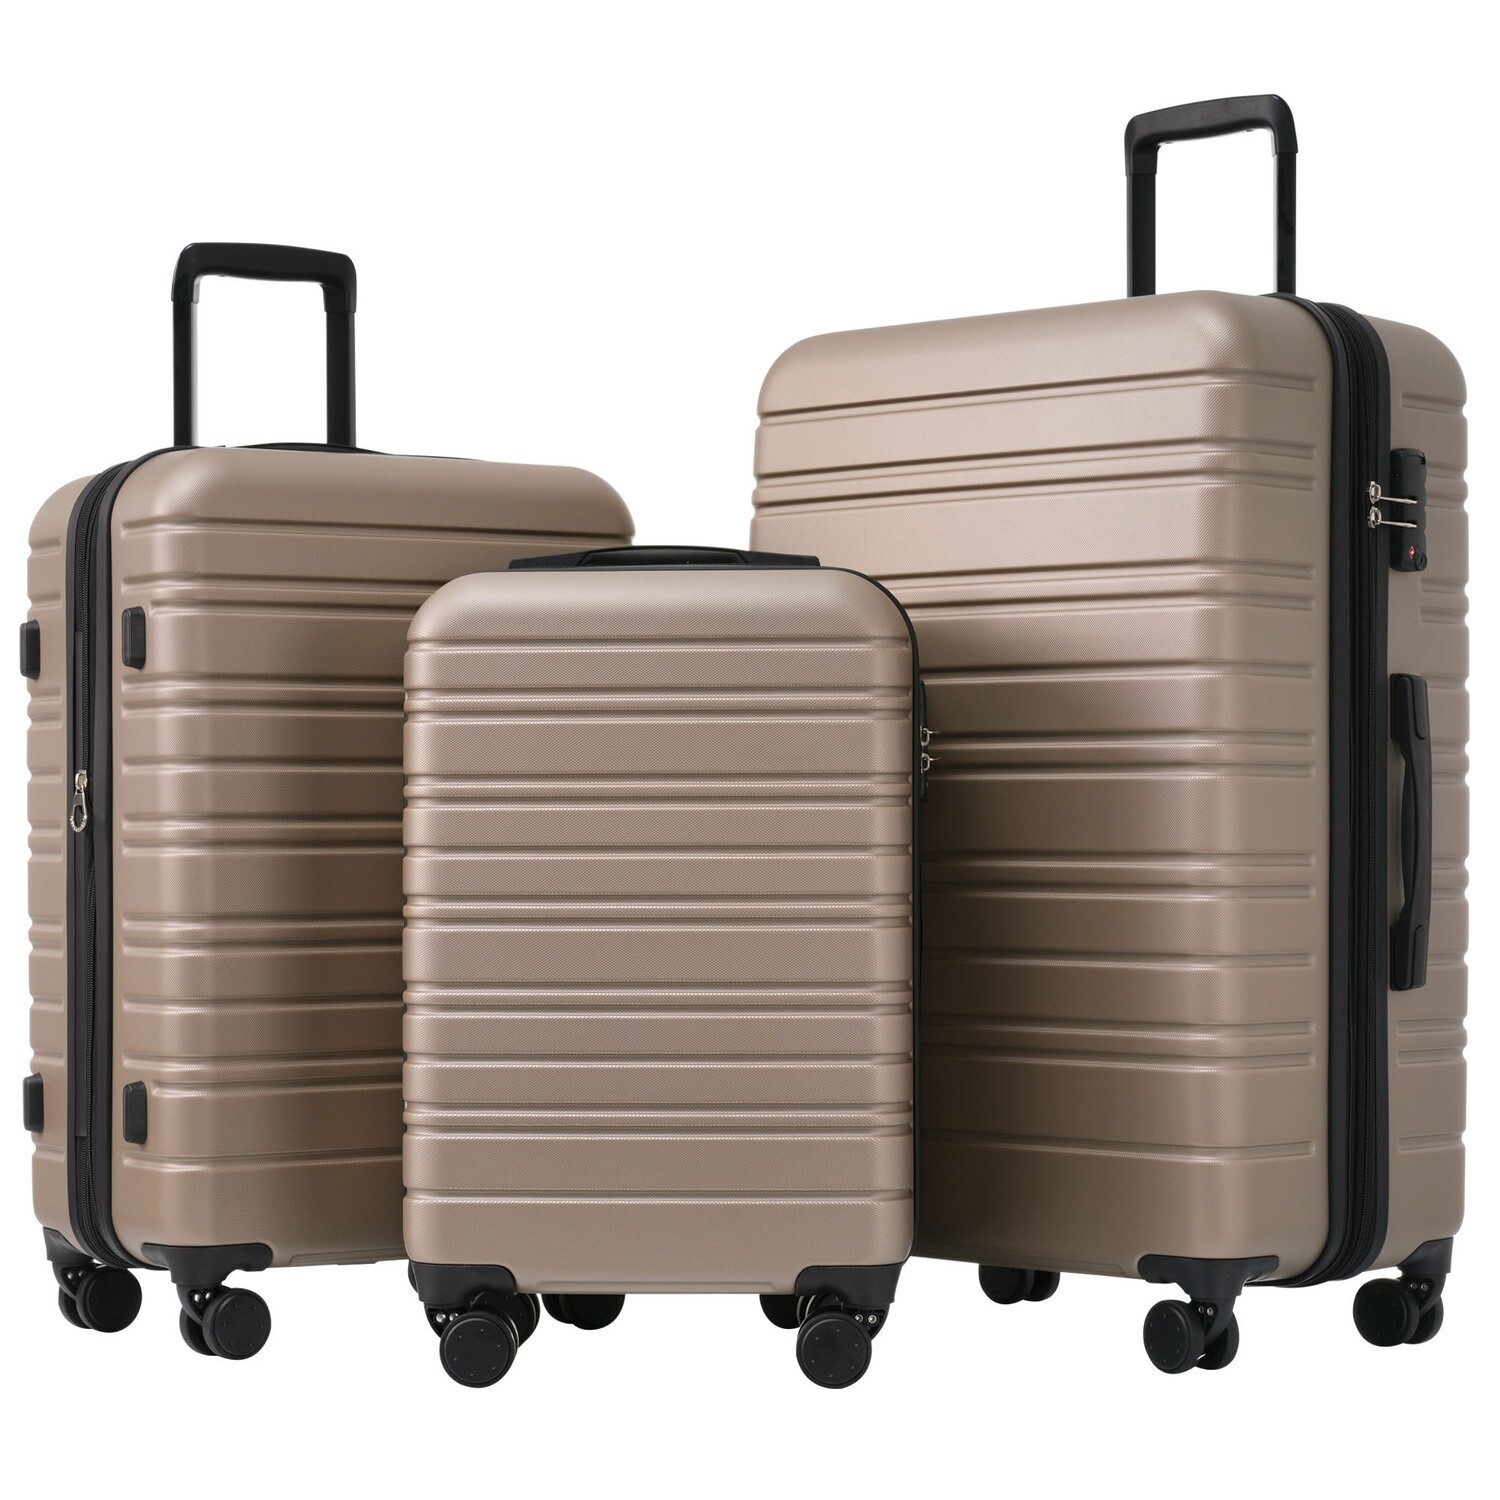 M-L-XL-Set,Hochwertiges ABS-Kofferset - Robuste 3-teilige Reisekollektion für stilvolle und sichere Unternehmungen